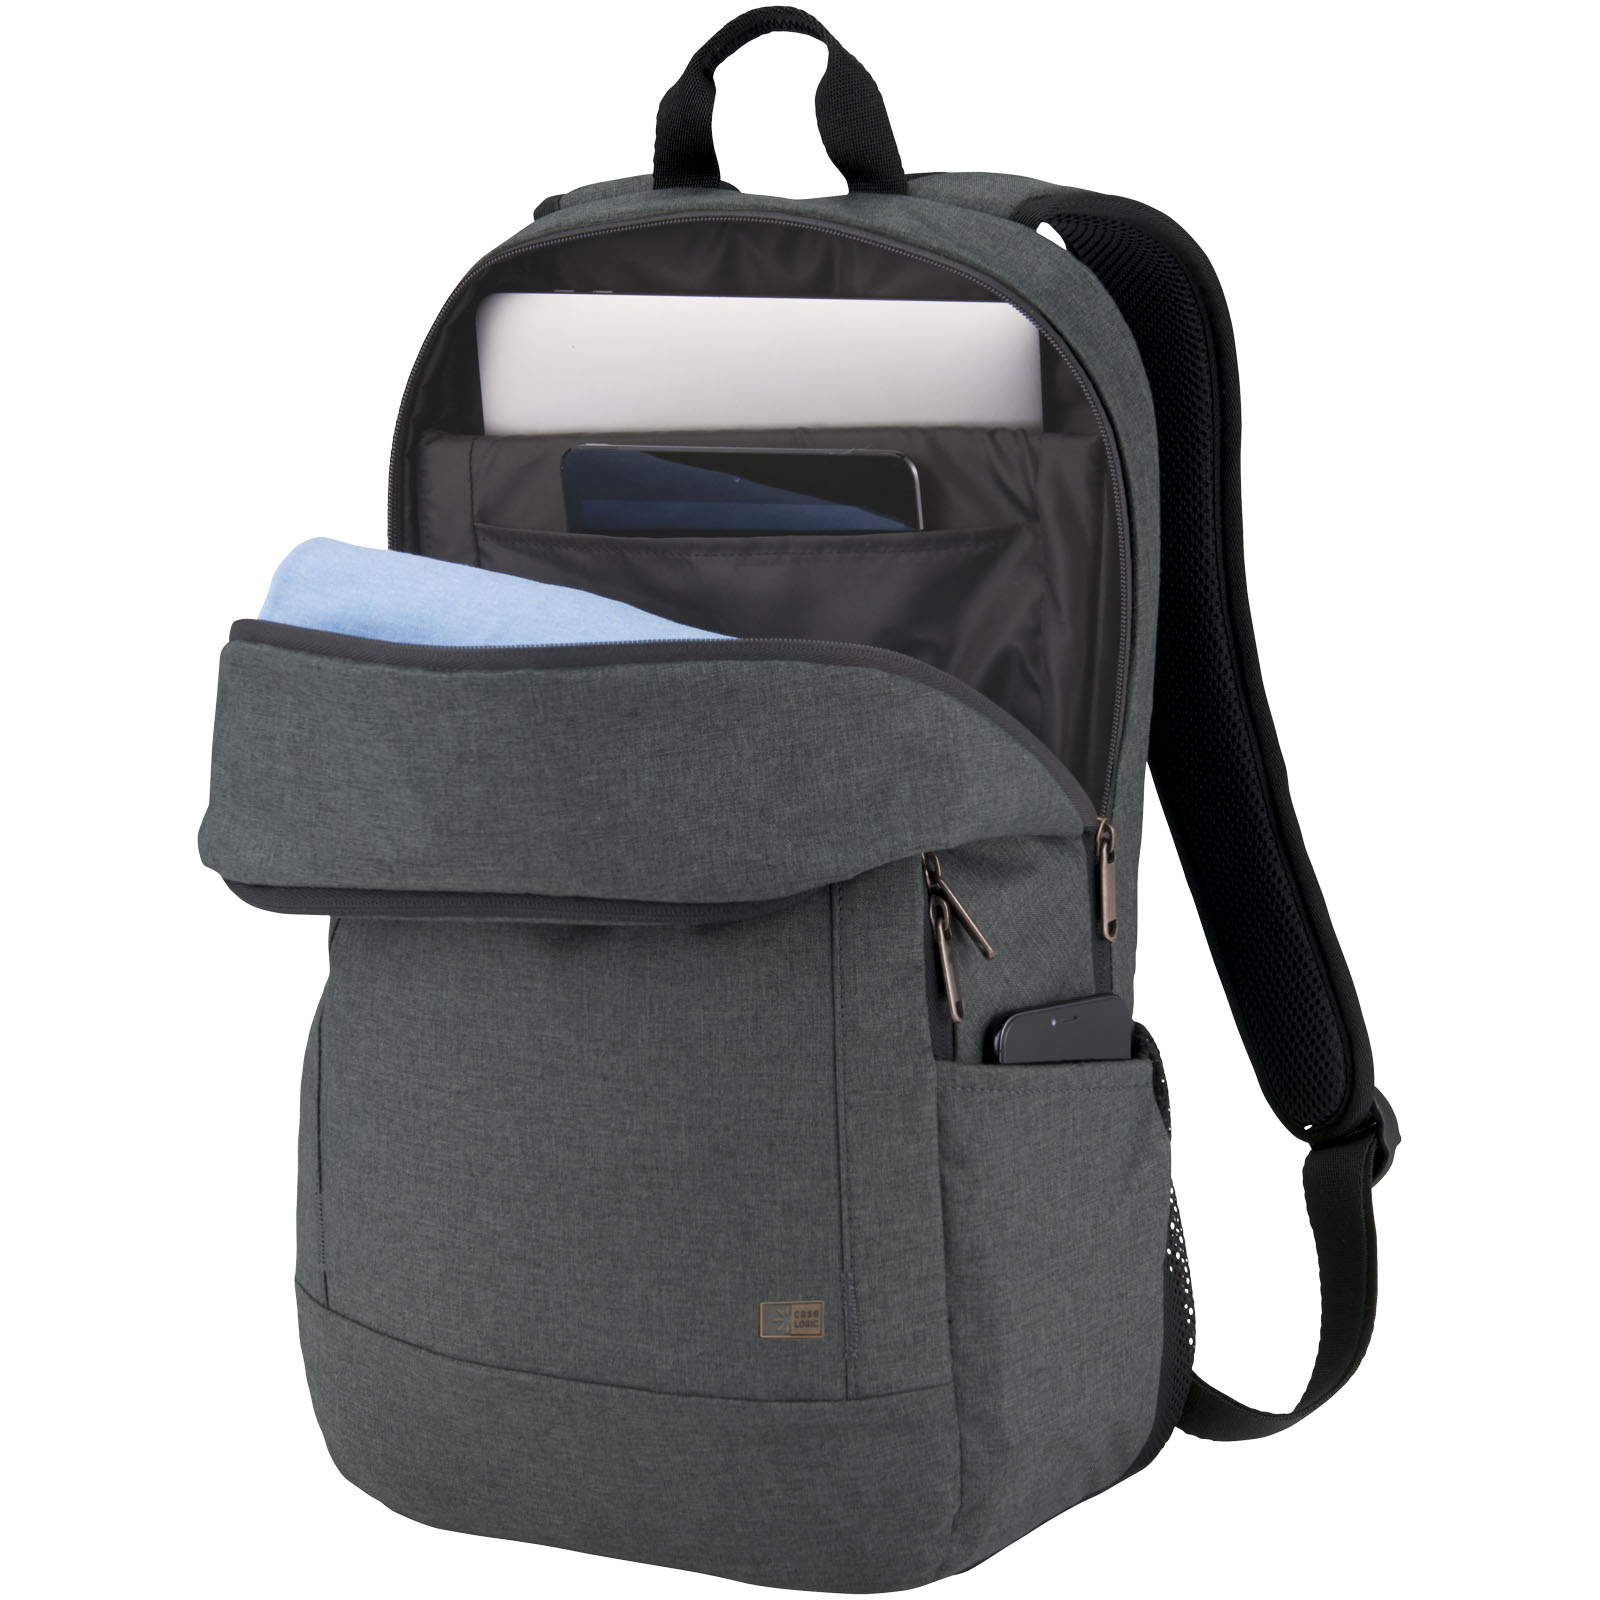 Advertising Laptop Backpacks - Case Logic Era 15